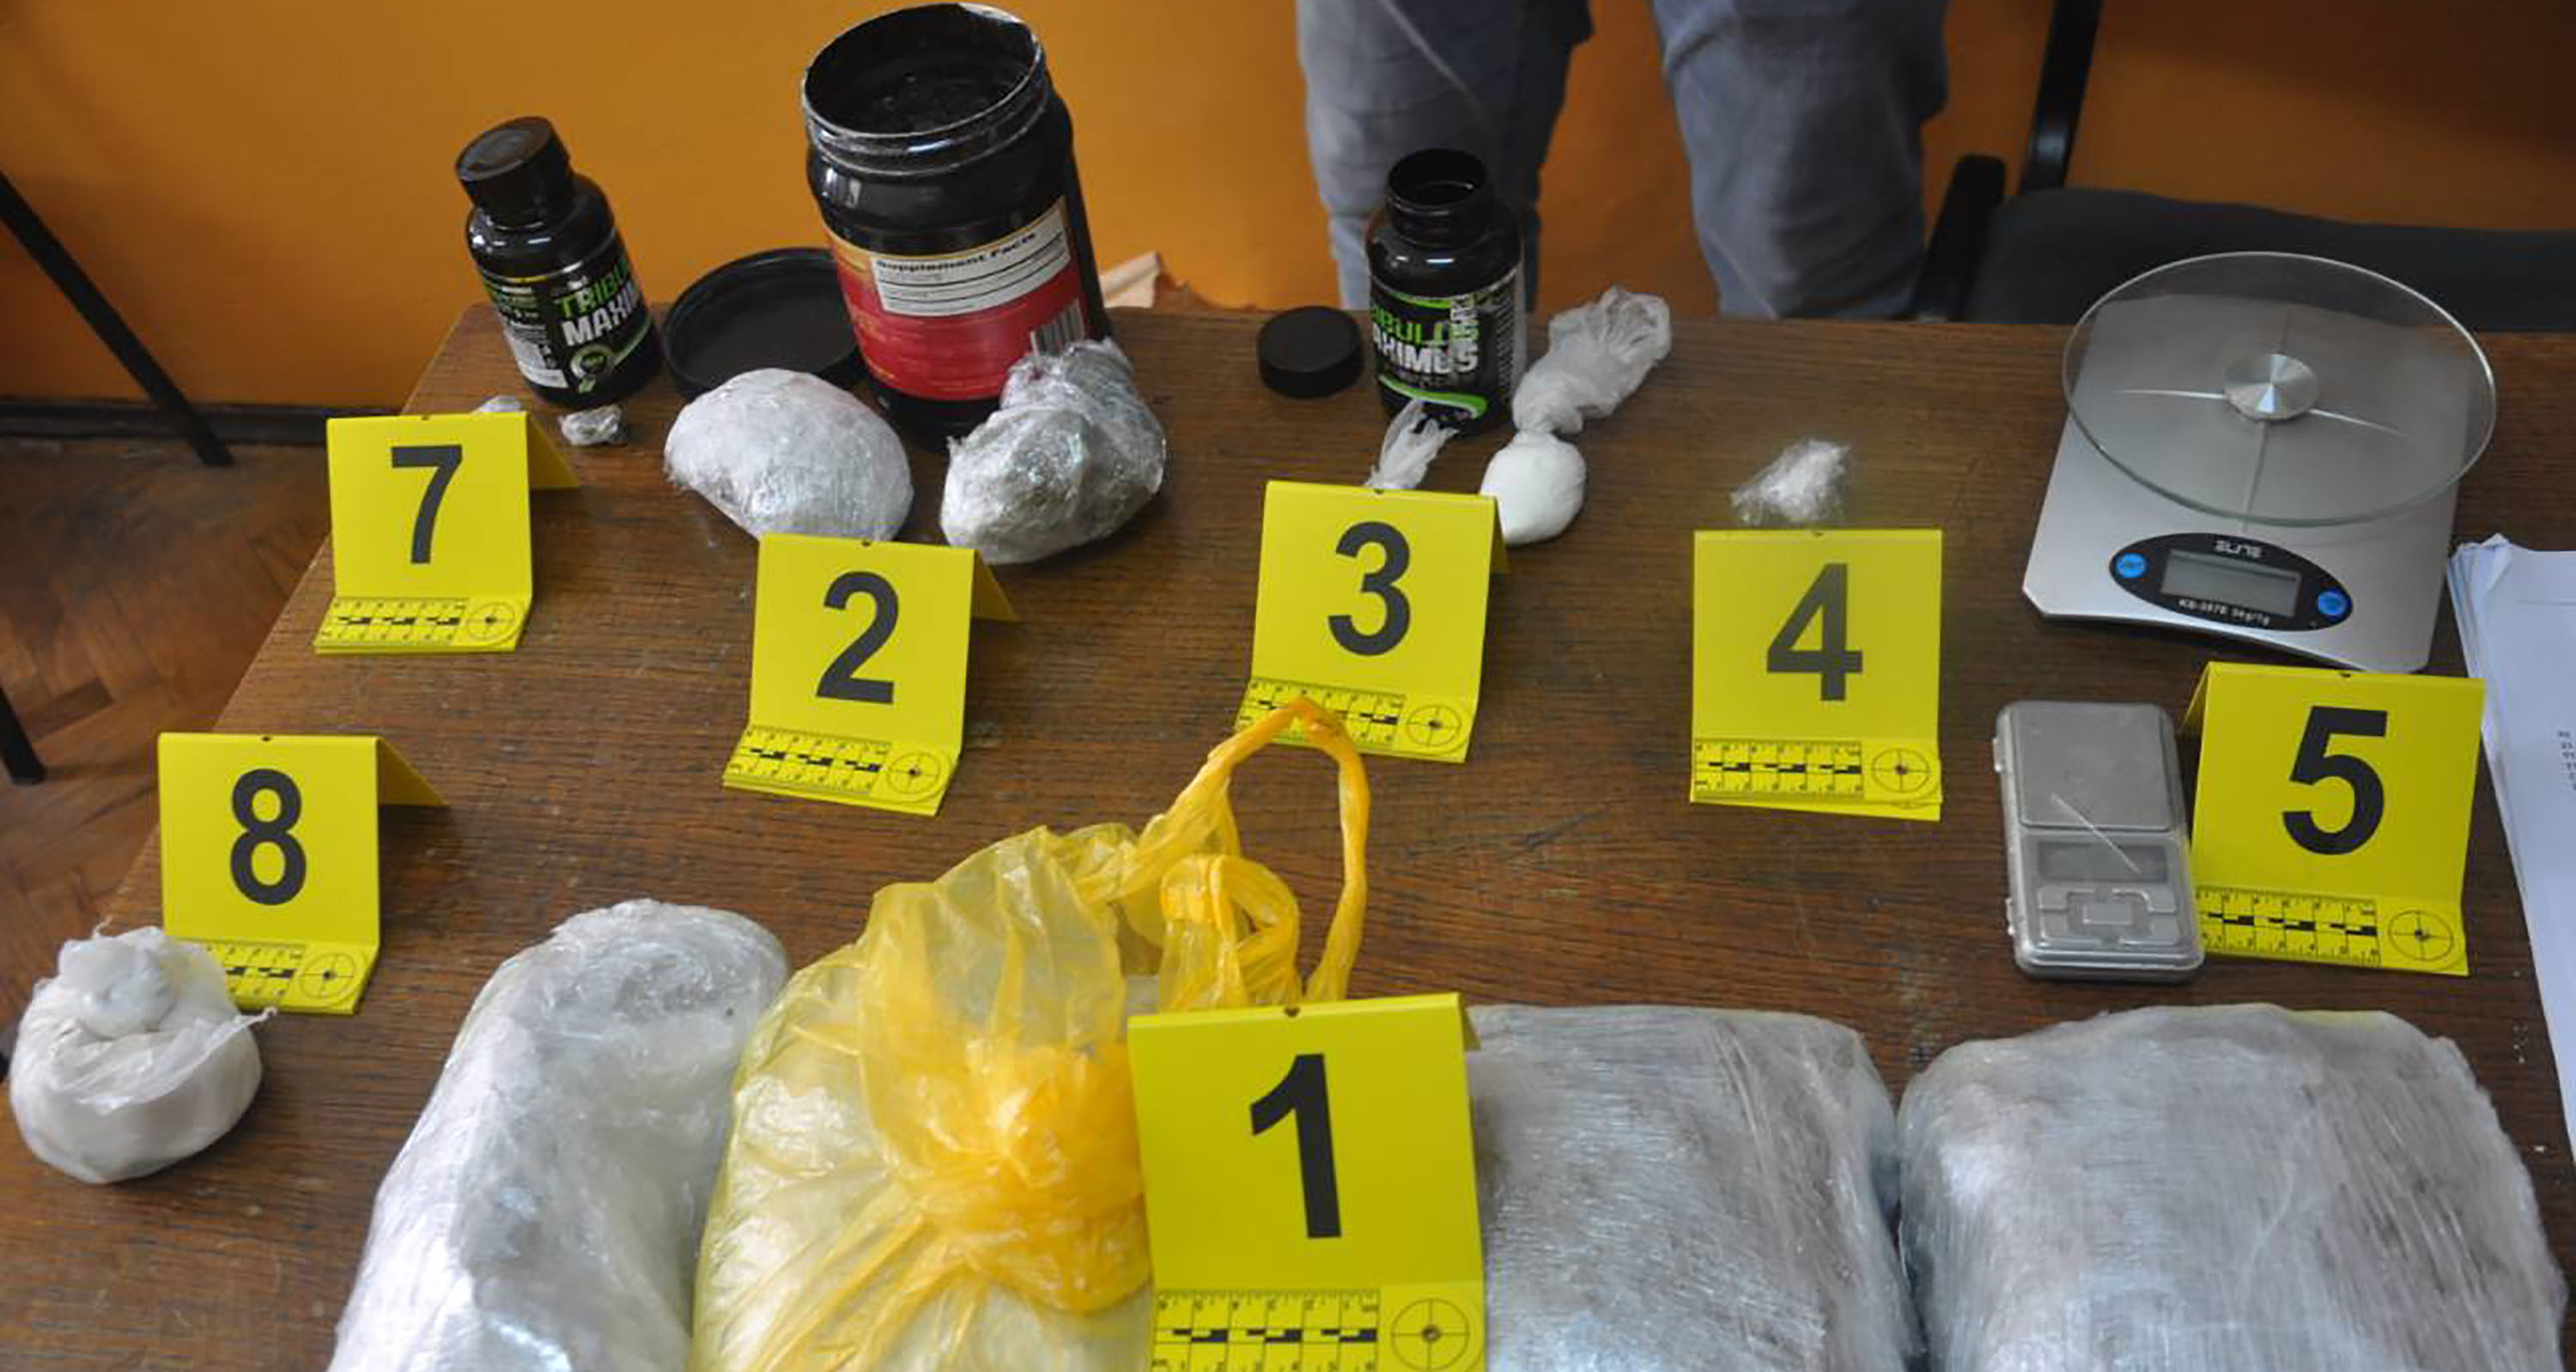 Полиција у одвојеним акцијама ухапсила 41 особу и запленила већу количину различитих врста дрога